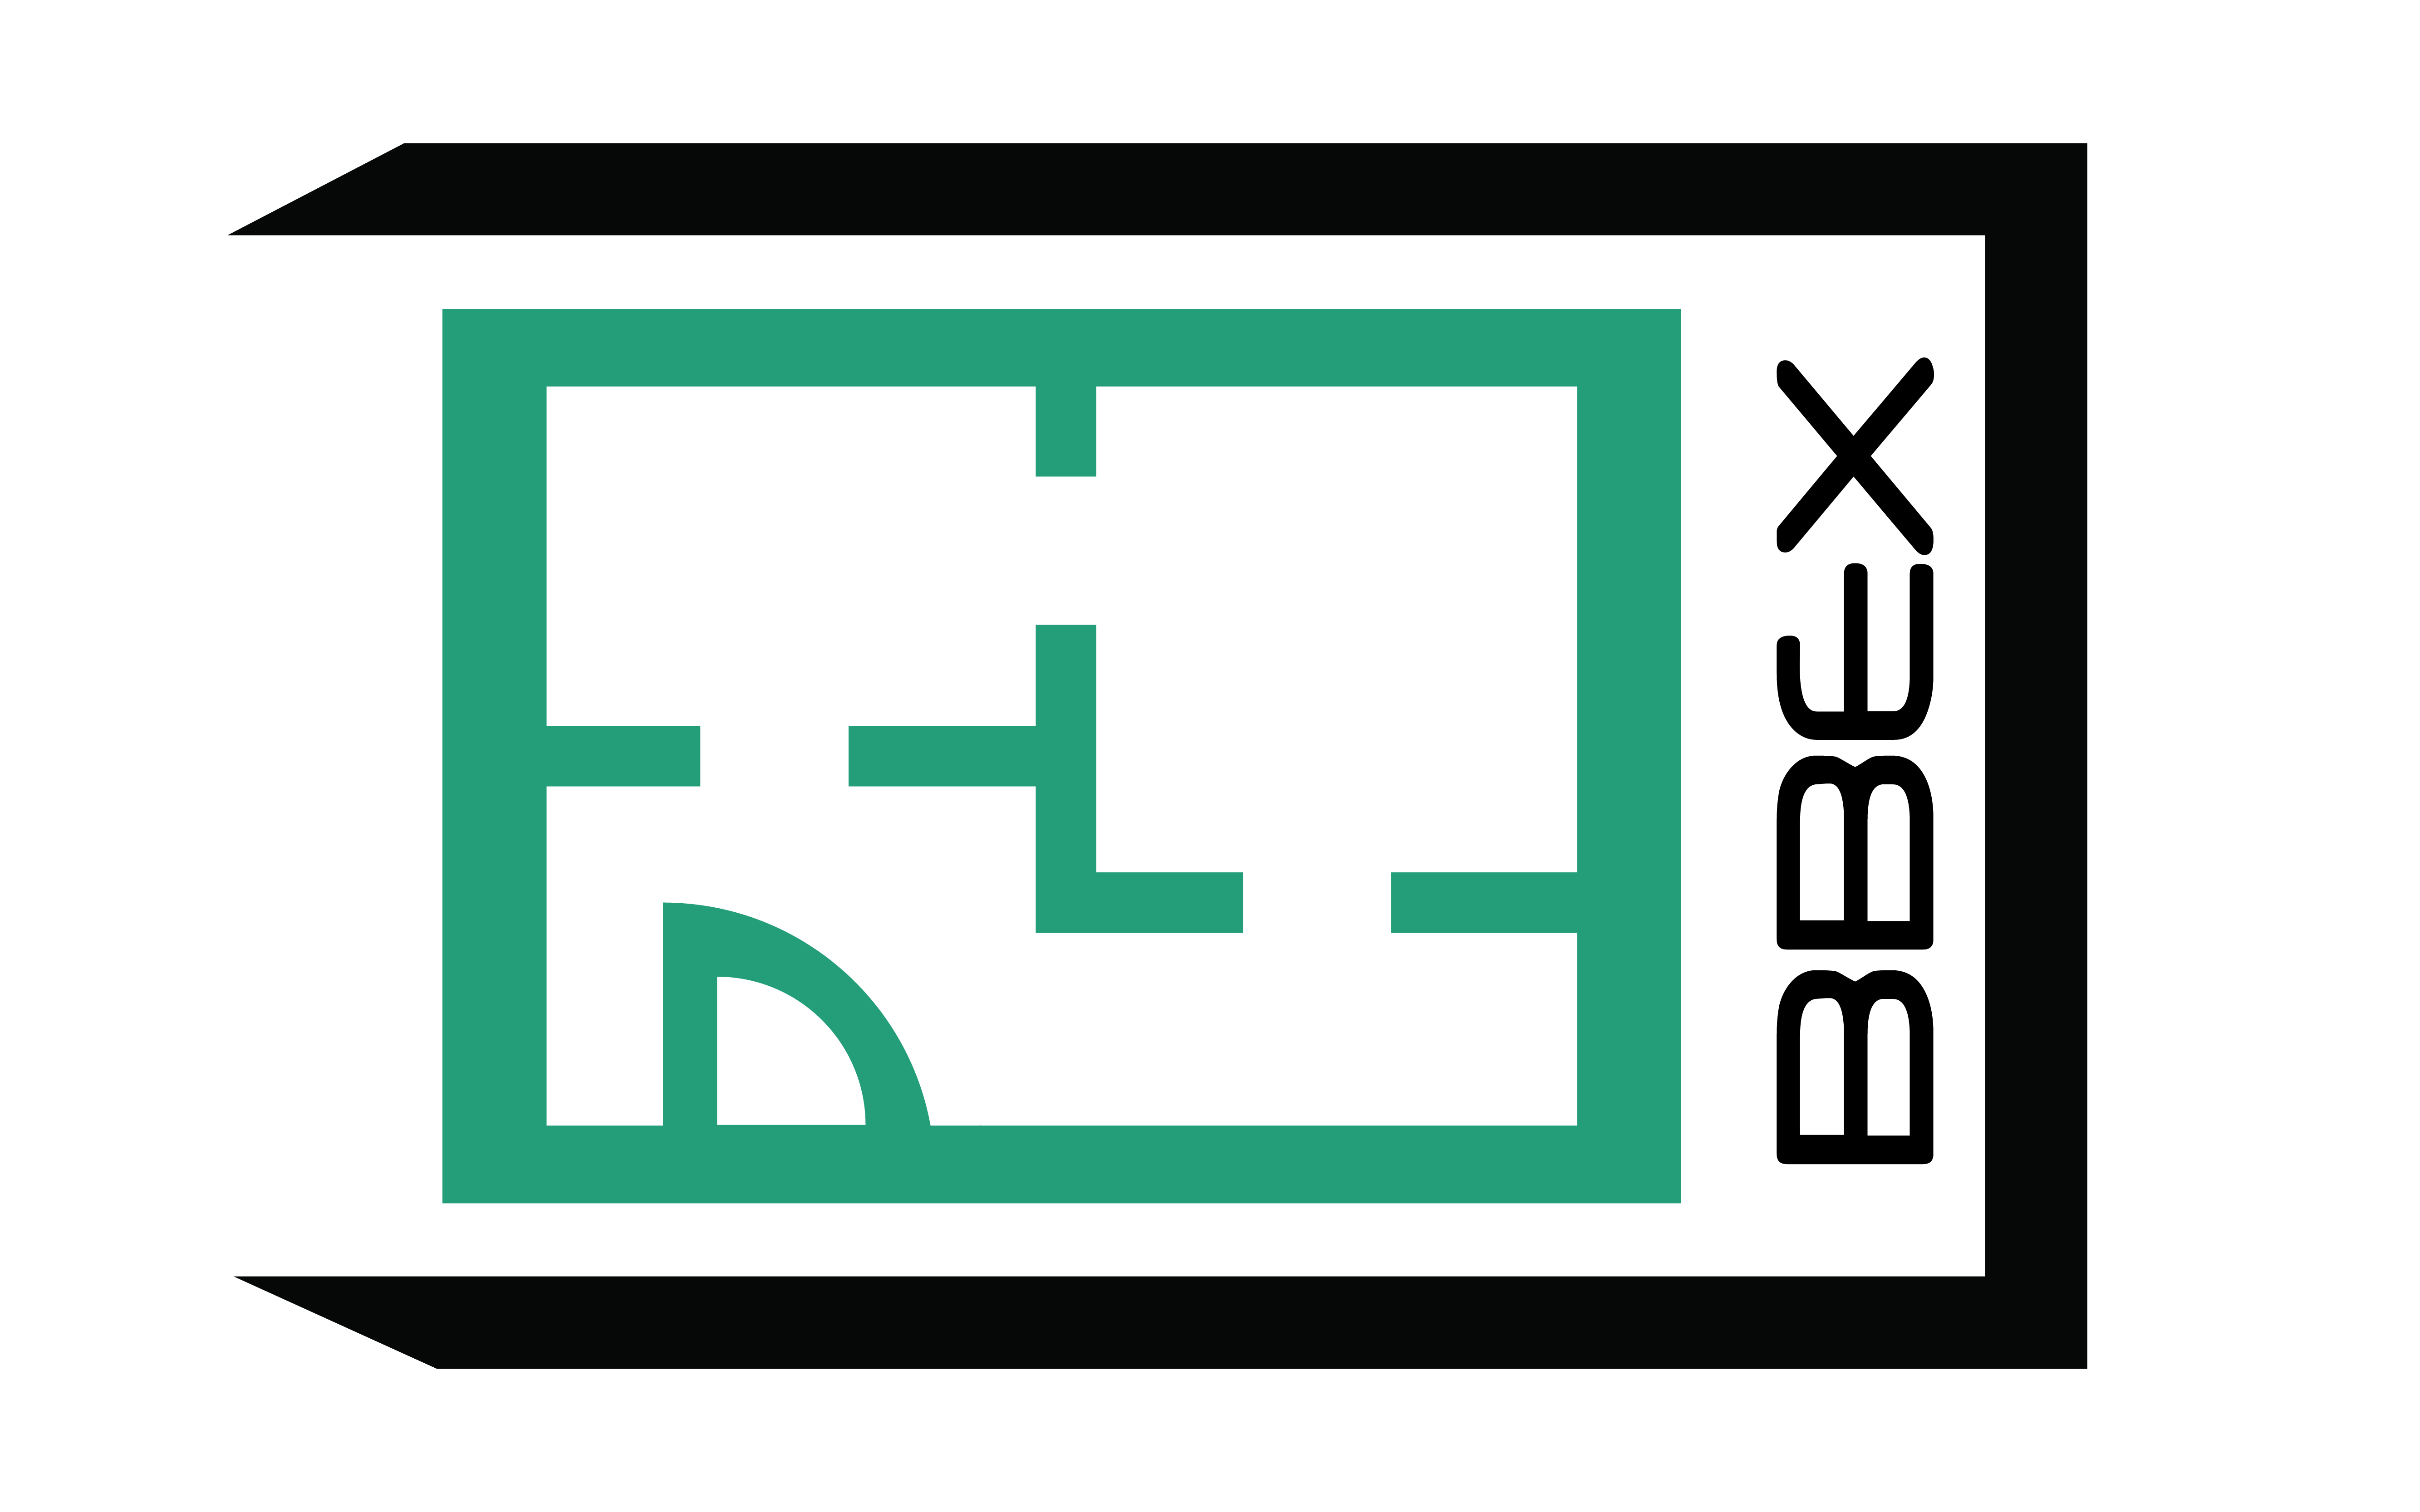 bbx logo